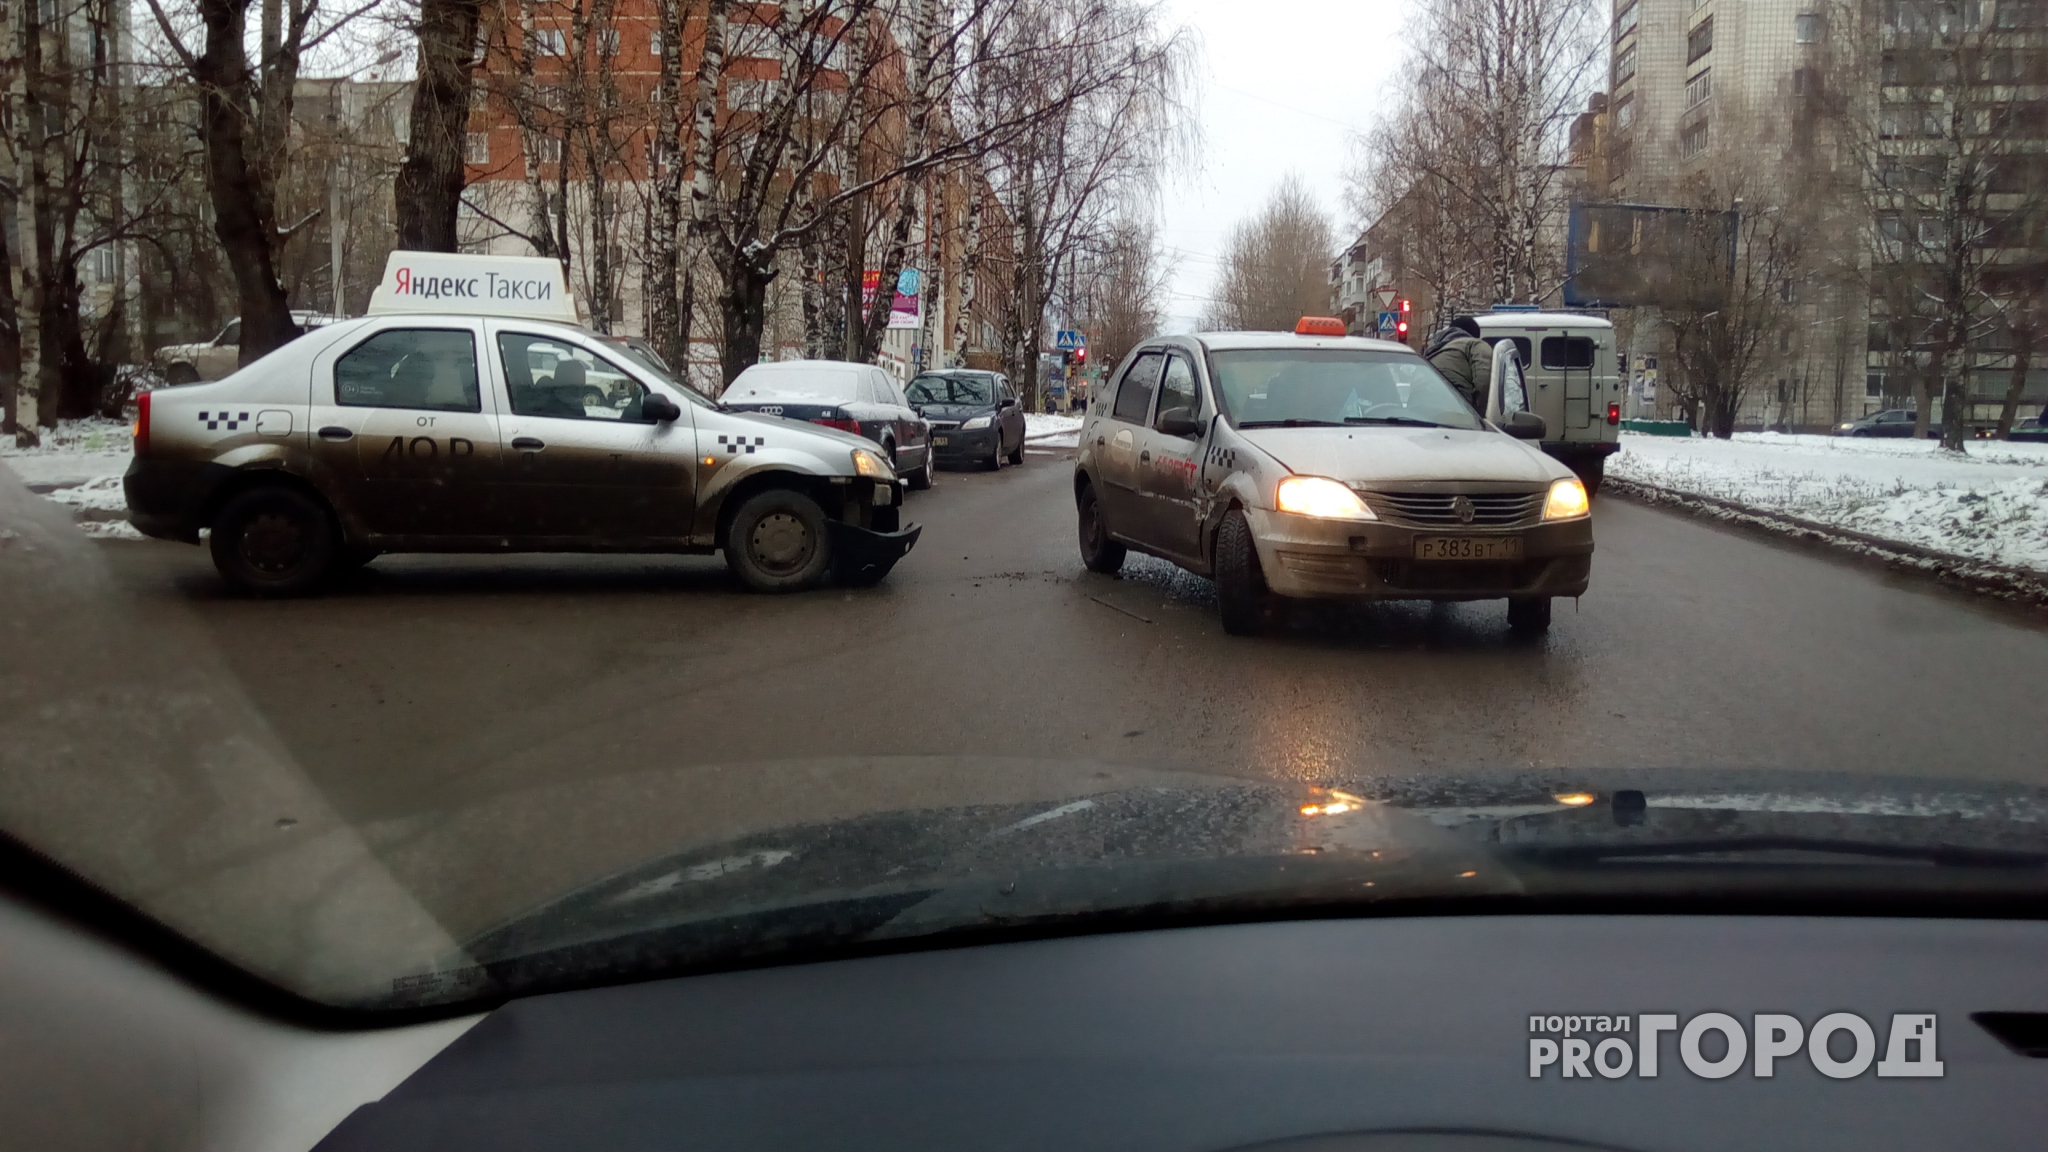 Такси за 50 рублей: в Сыктывкар вернулись низкие цены за поездку